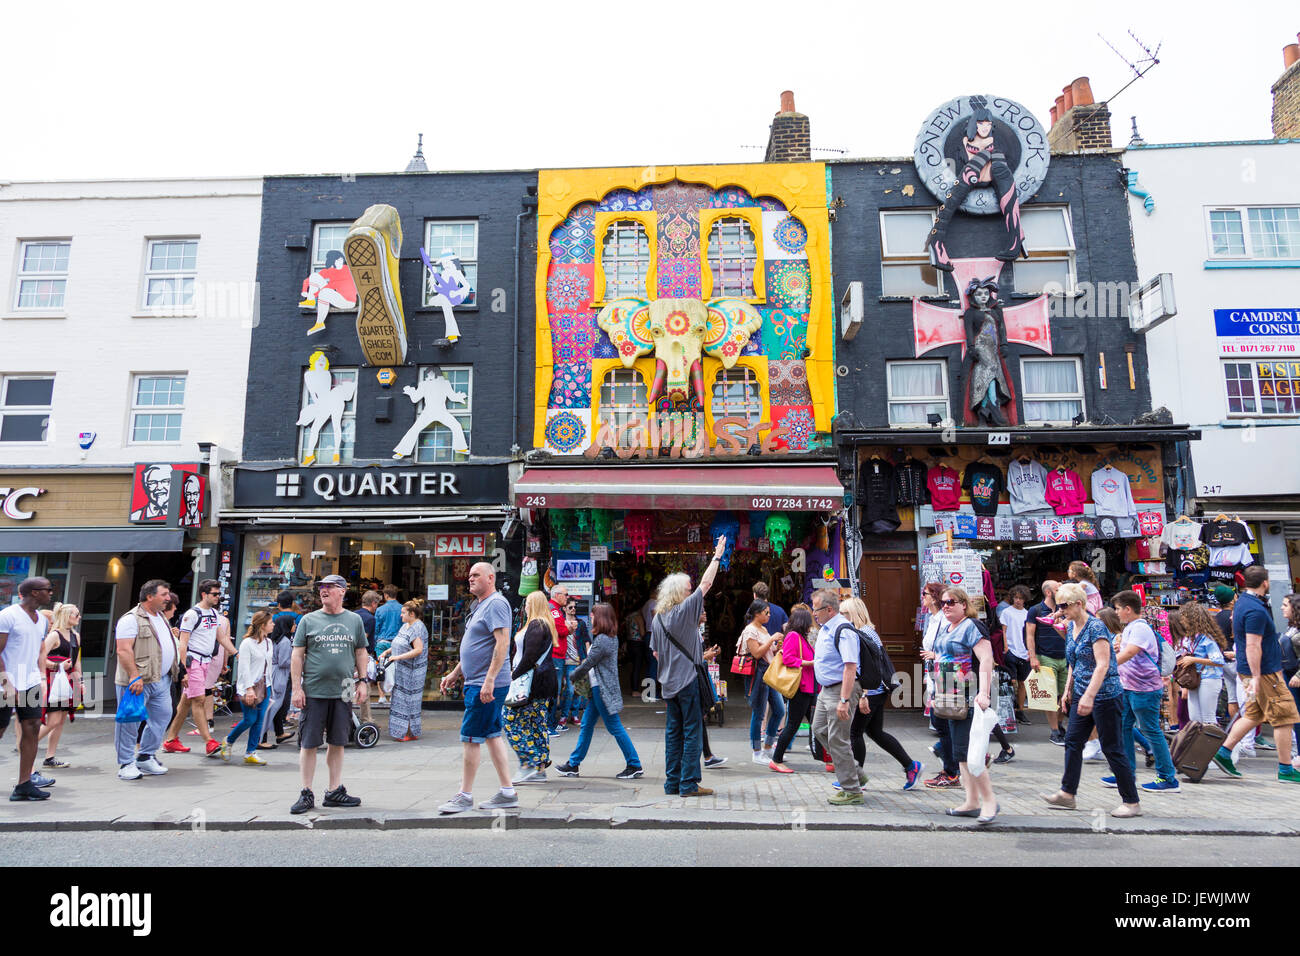 Folle e colorato arty shop fronti nel mercato di Camden, London, Regno Unito Foto Stock